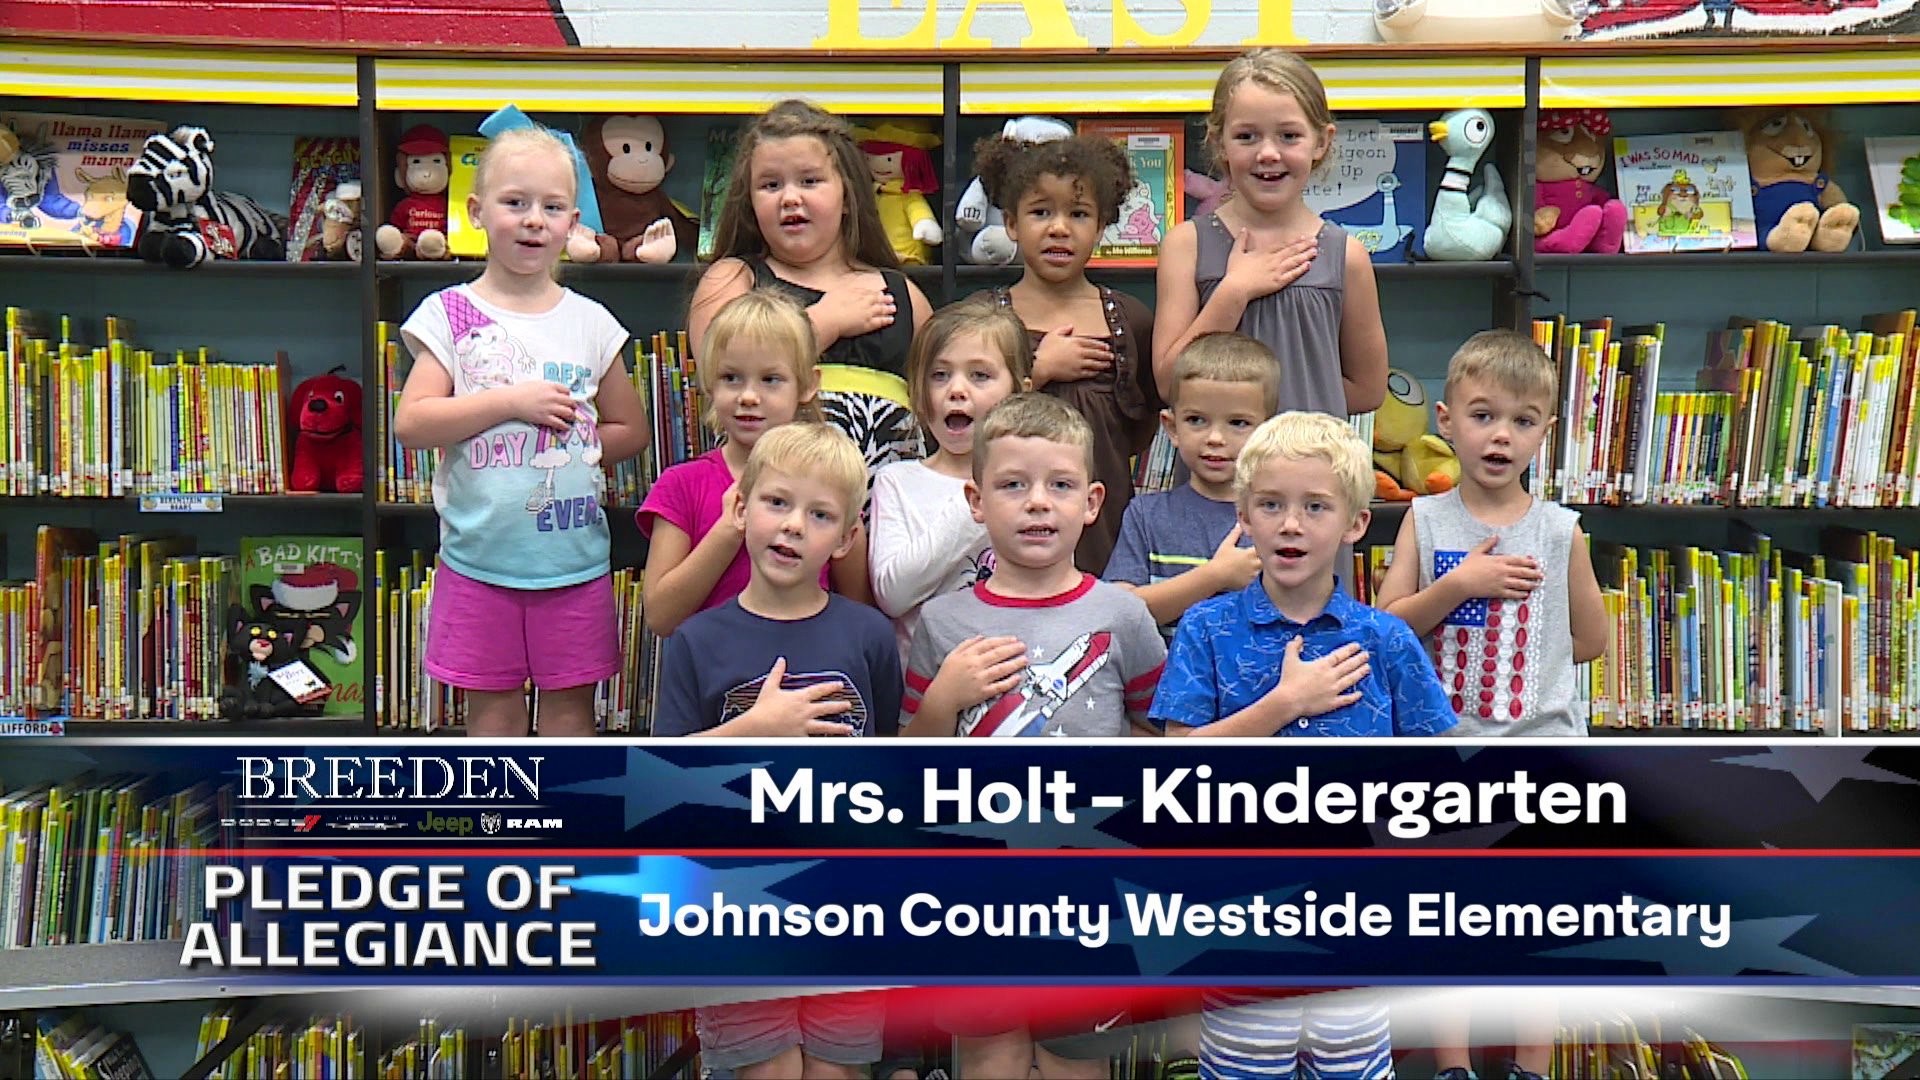 Mrs. Holt Kindergarten Johnson County Westside Elementary